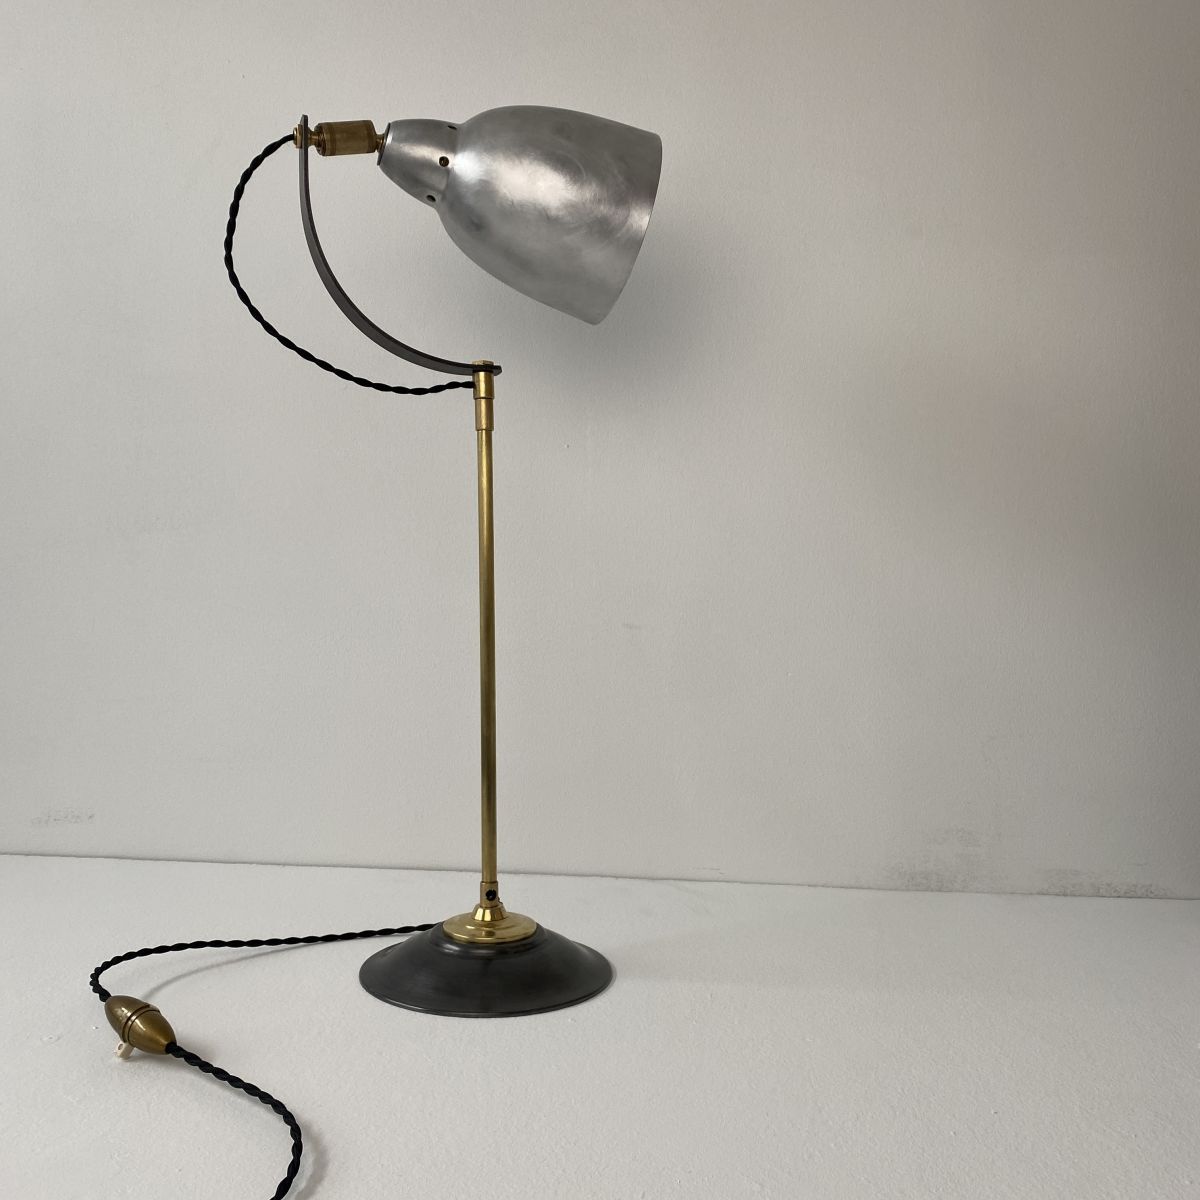 Ancienne lampe d'atelier Nikel-Forms. Année 50. Style industriel